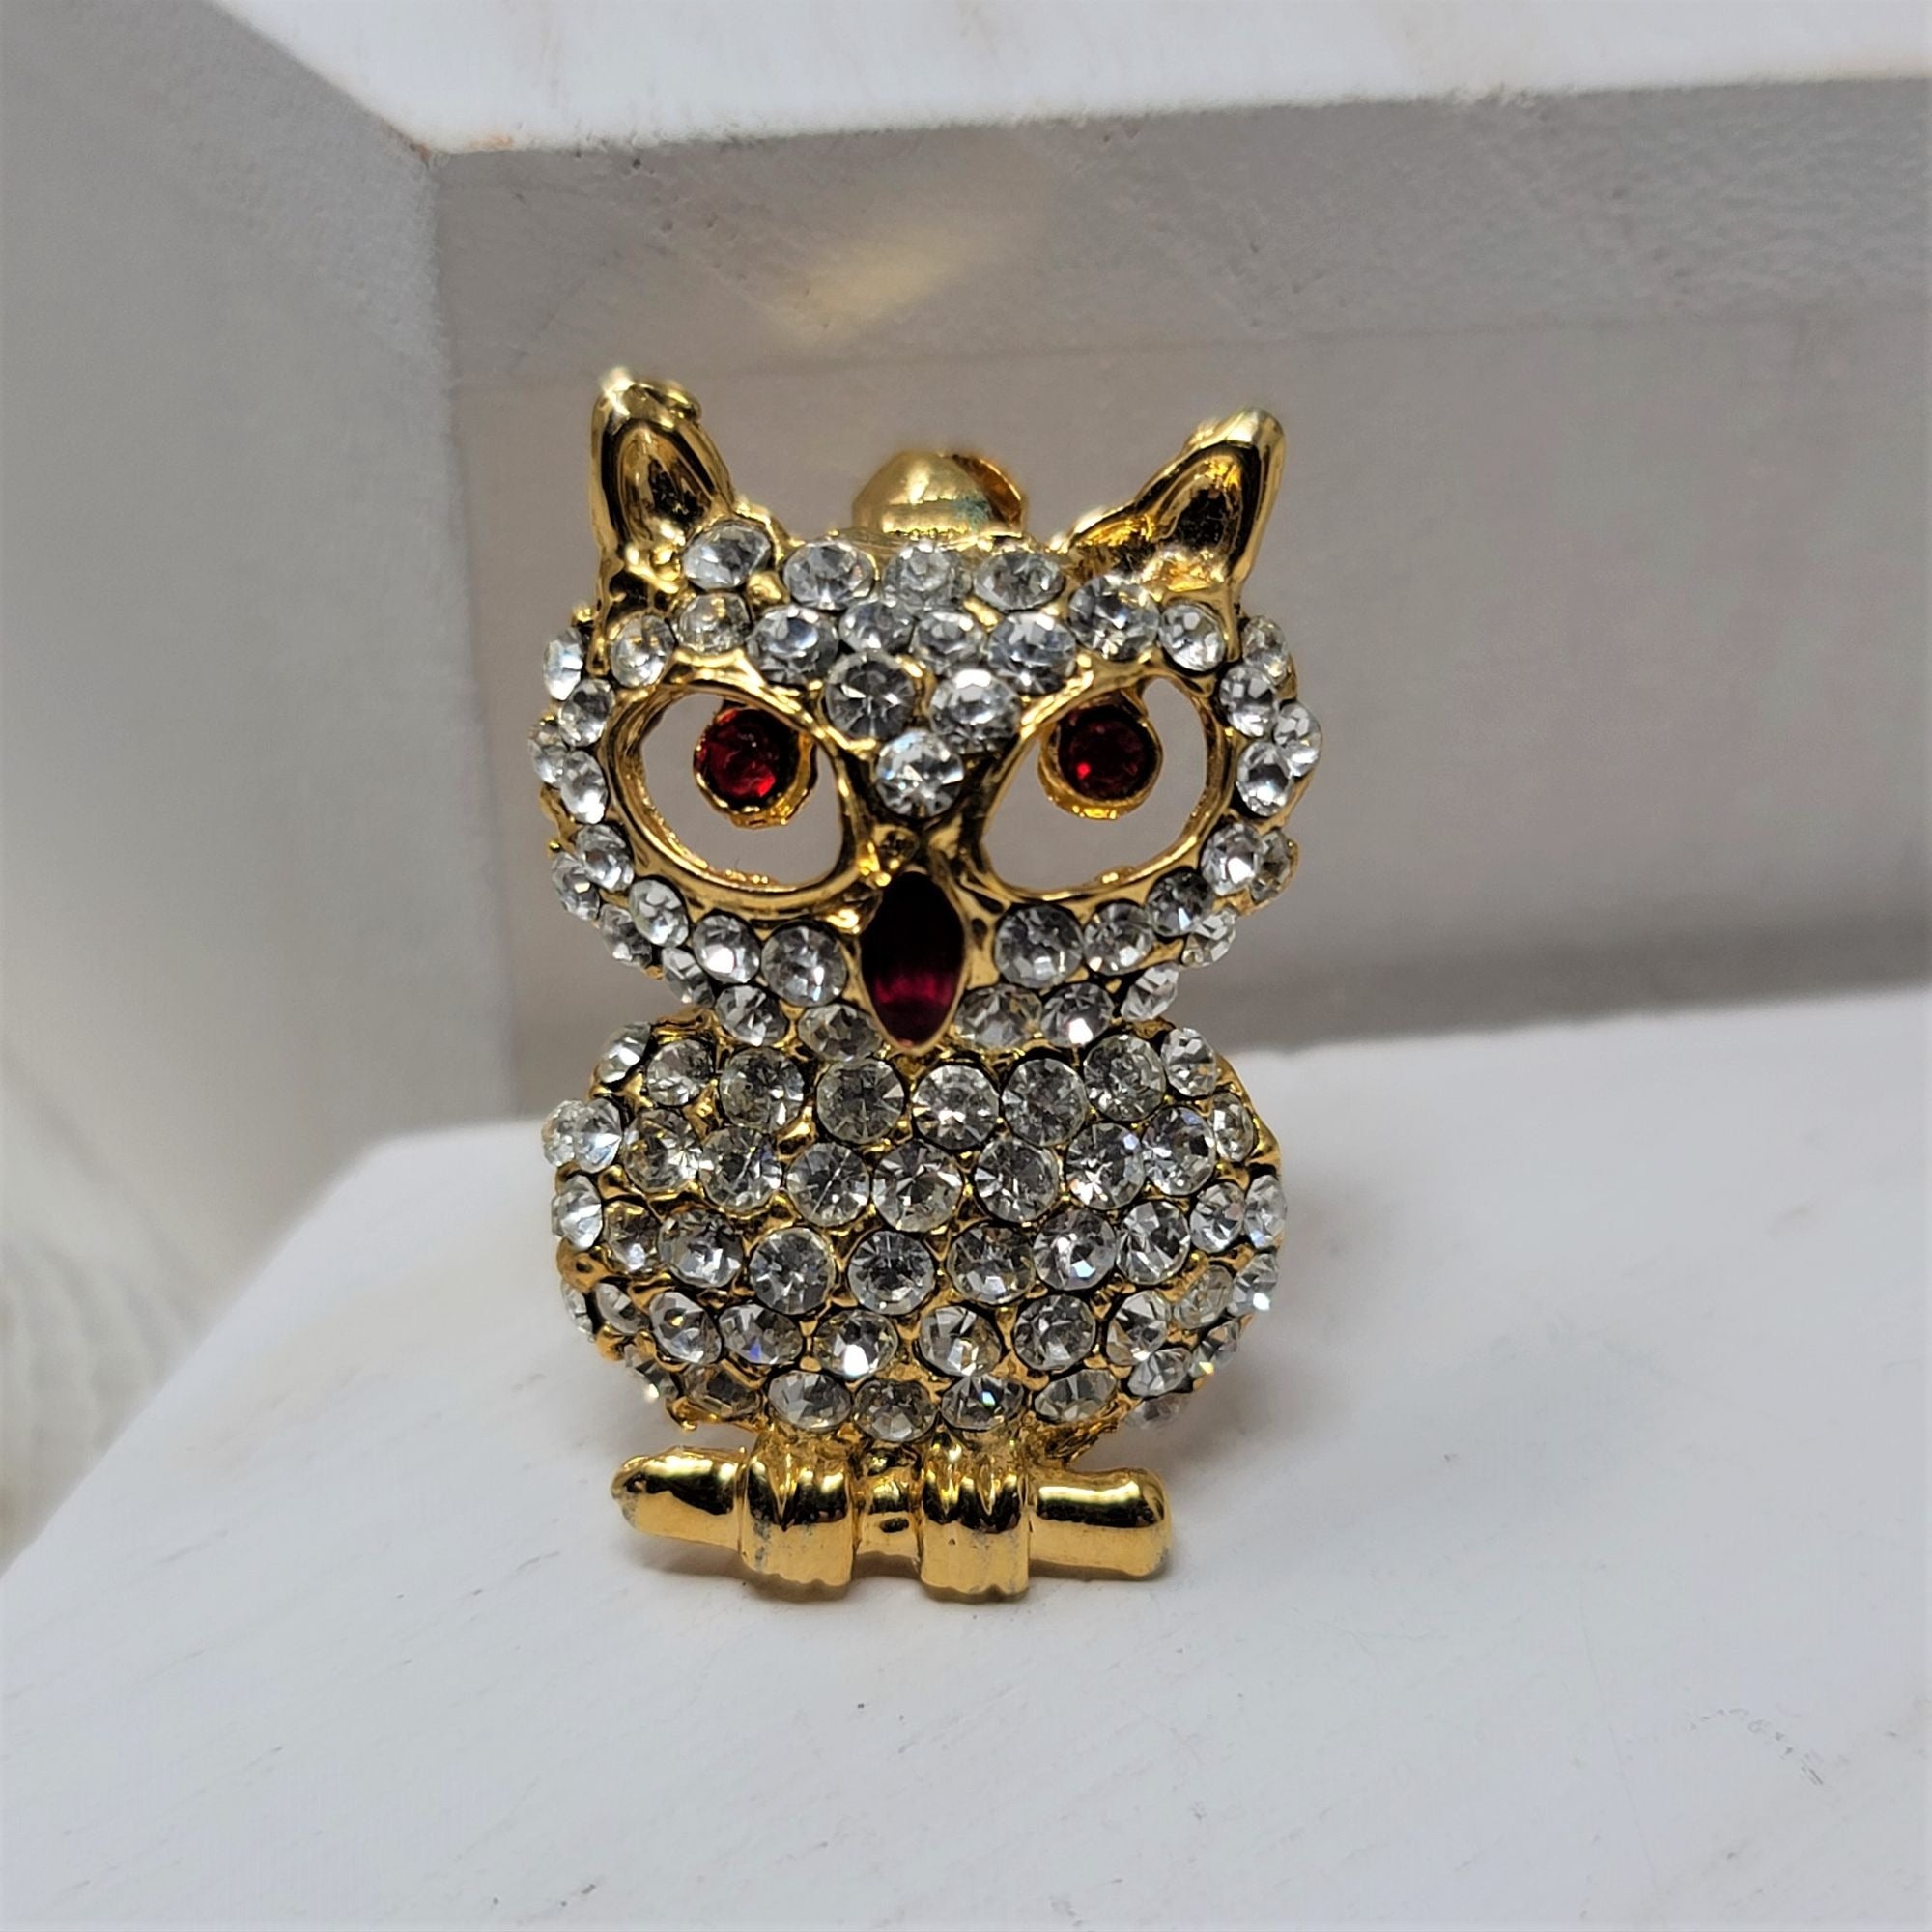 Sparkling Rhinestone Owl Pin Brooch Ruby Eyes